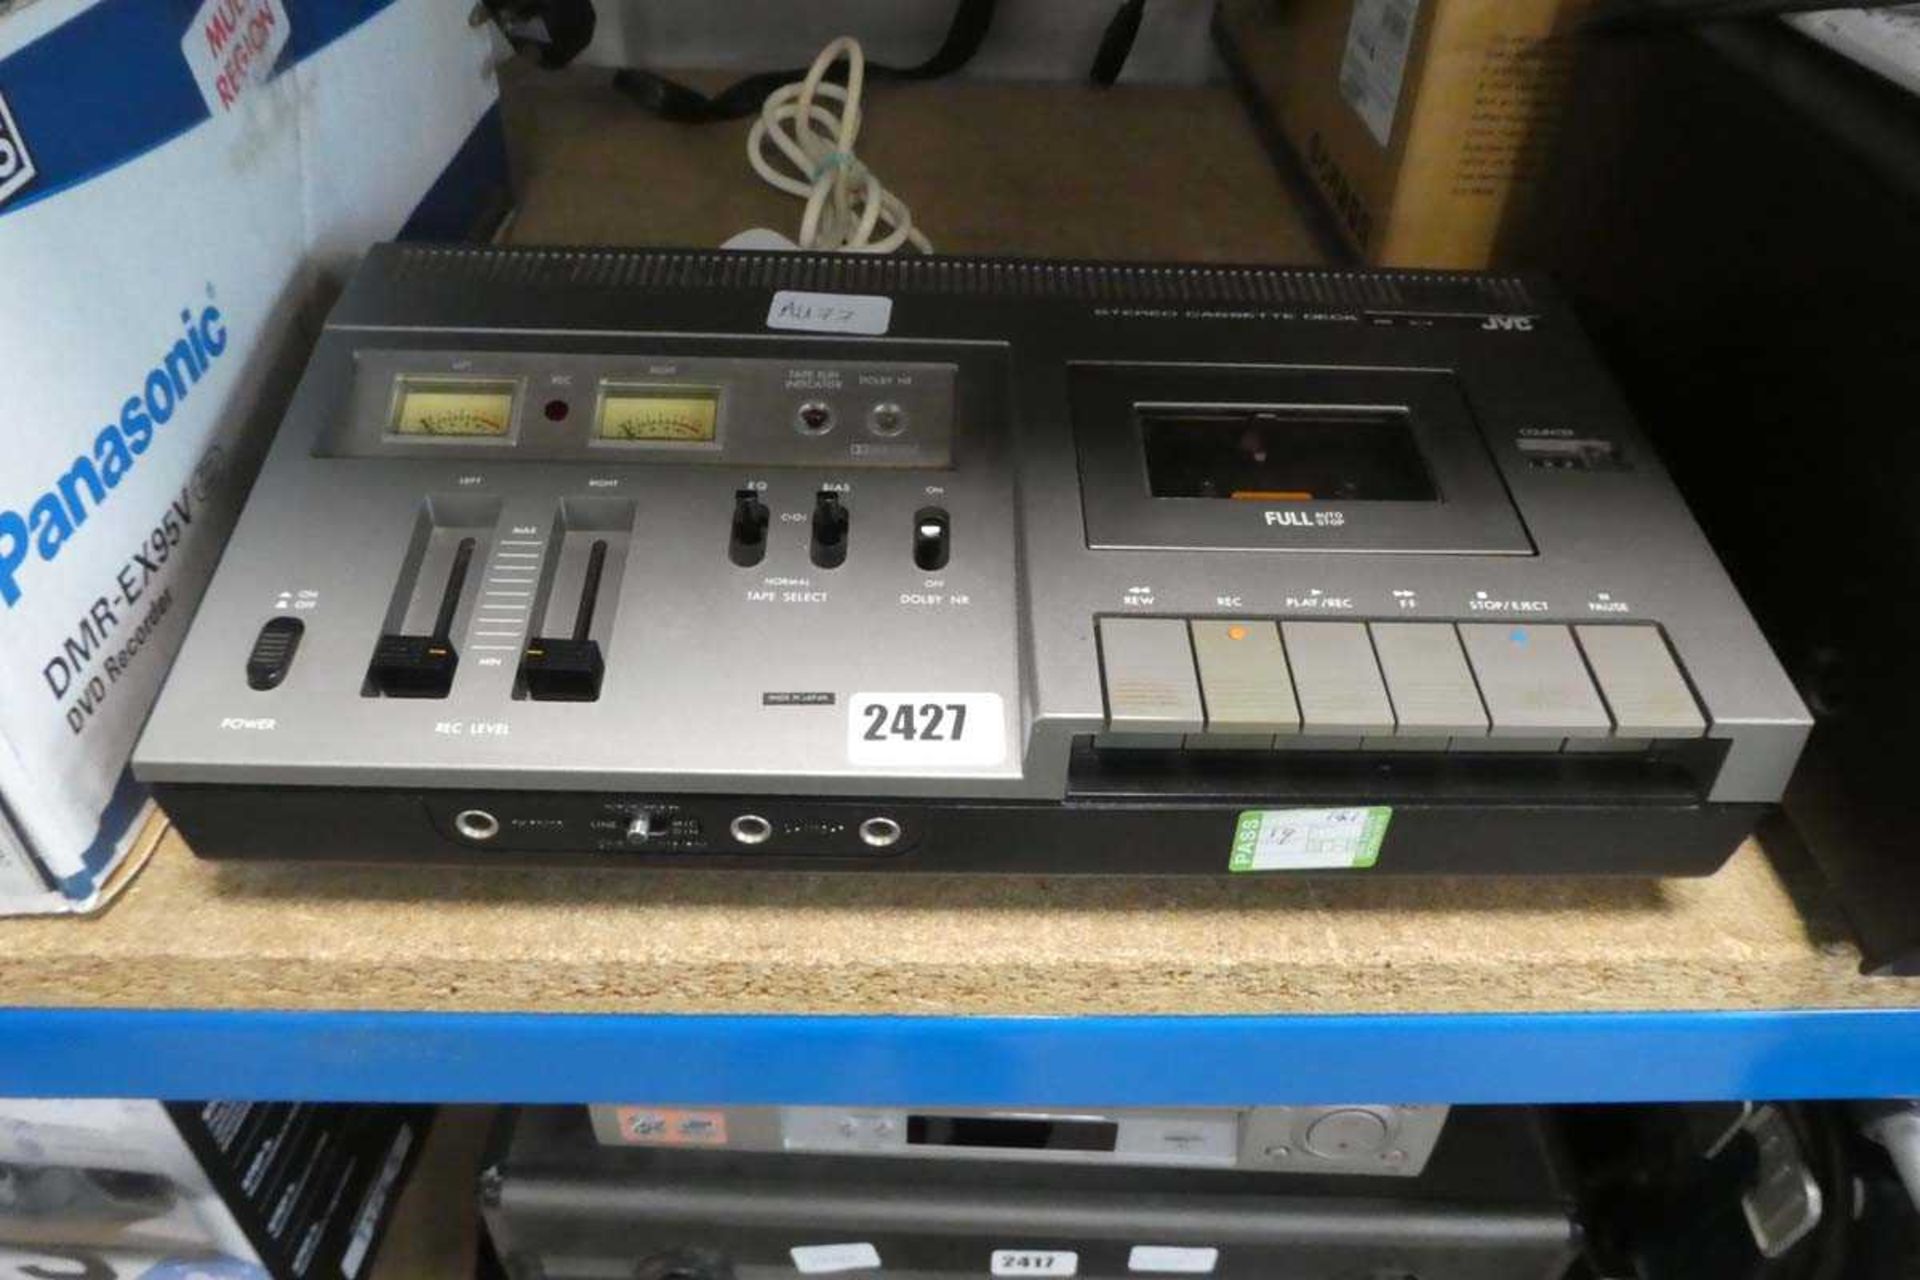 JVC stereo cassette deck model: CD-1740